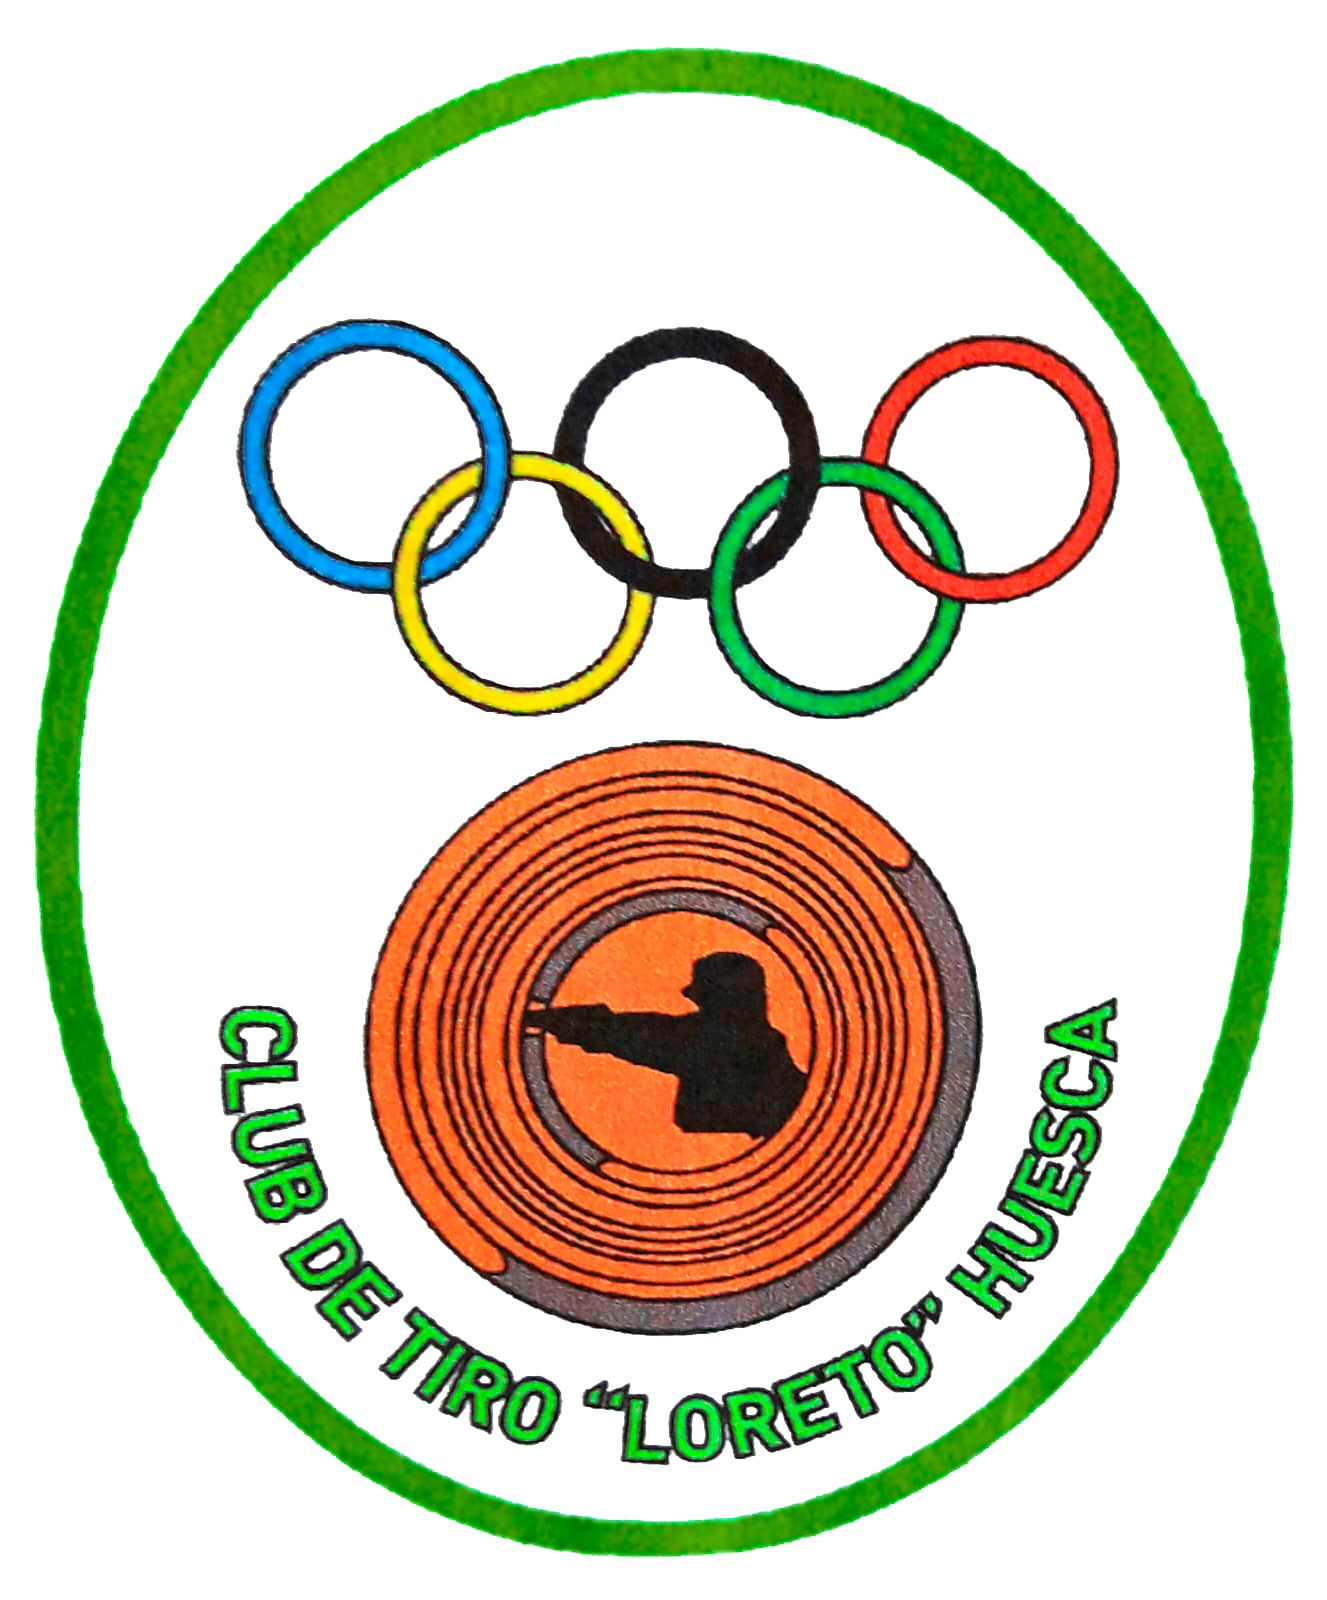 Club de Tiro Loreto